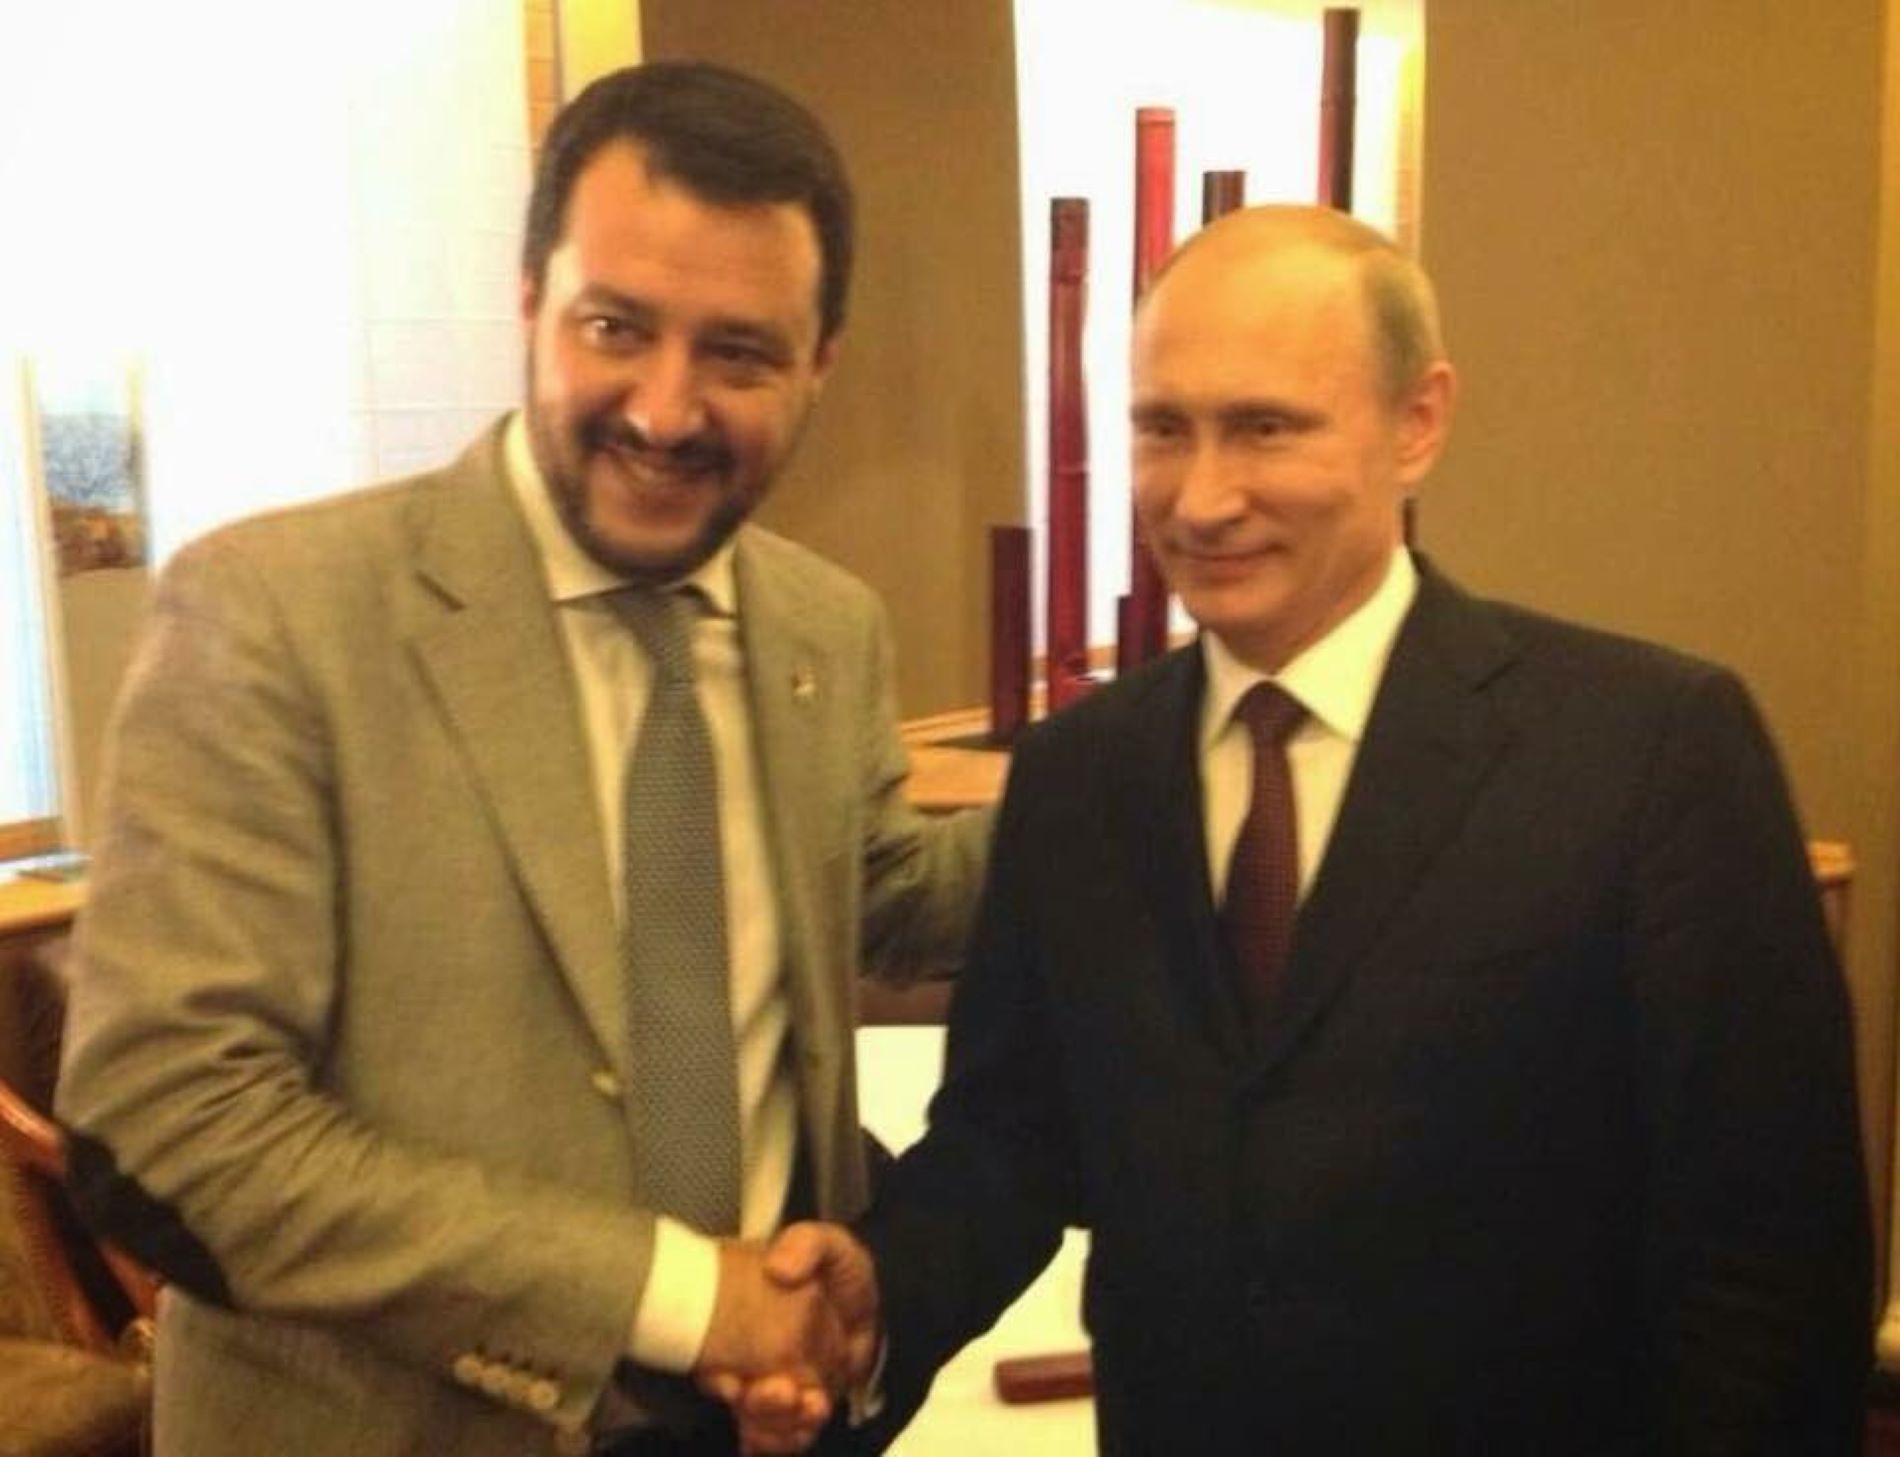 Rússia va contactar Matteo Salvini per fer caure el govern d'Itàlia, segons una investigació